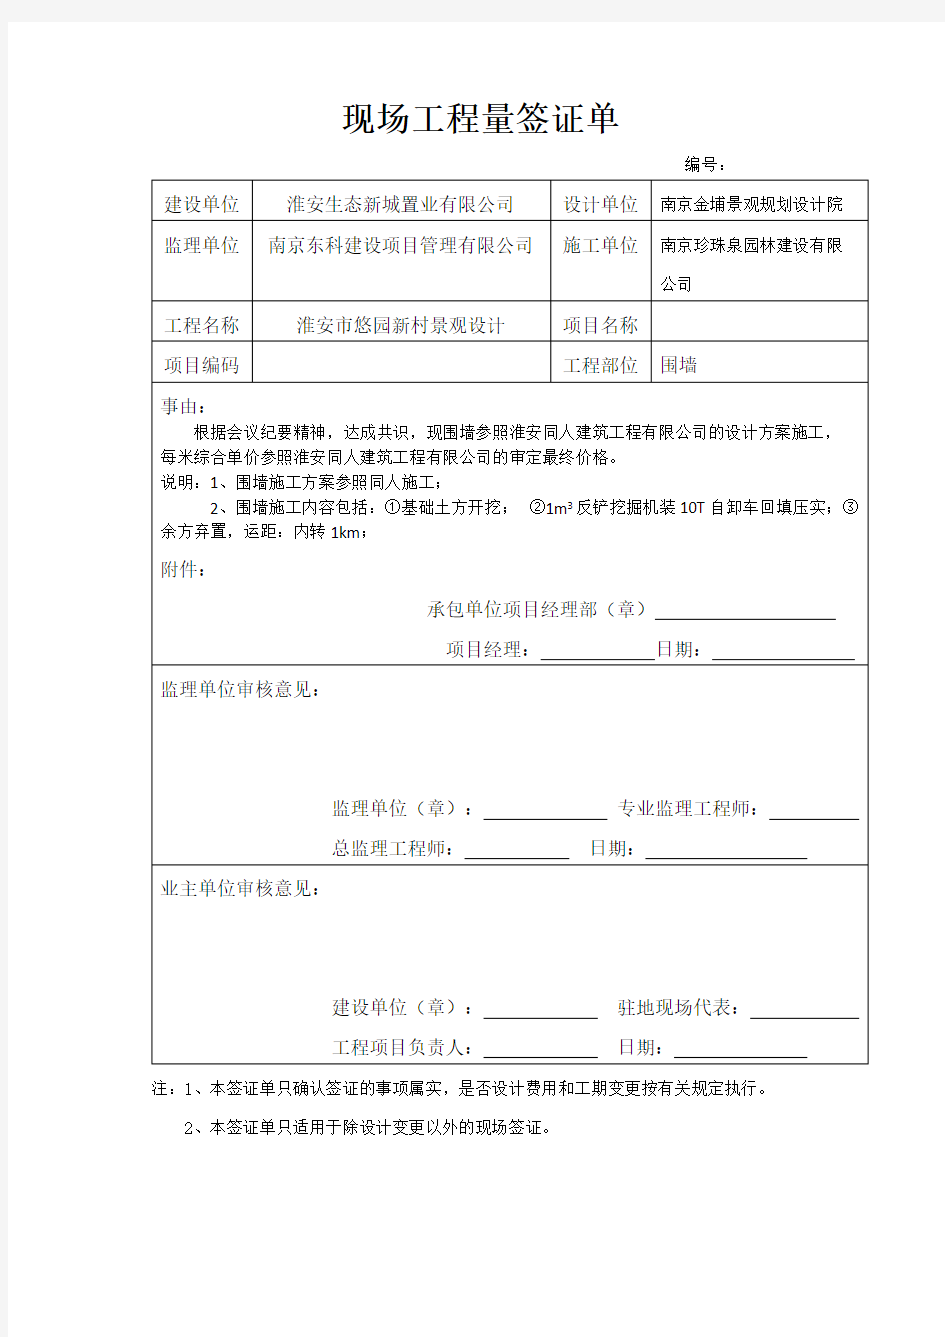 现场工程量签证单2018年江苏(可编辑修改版).